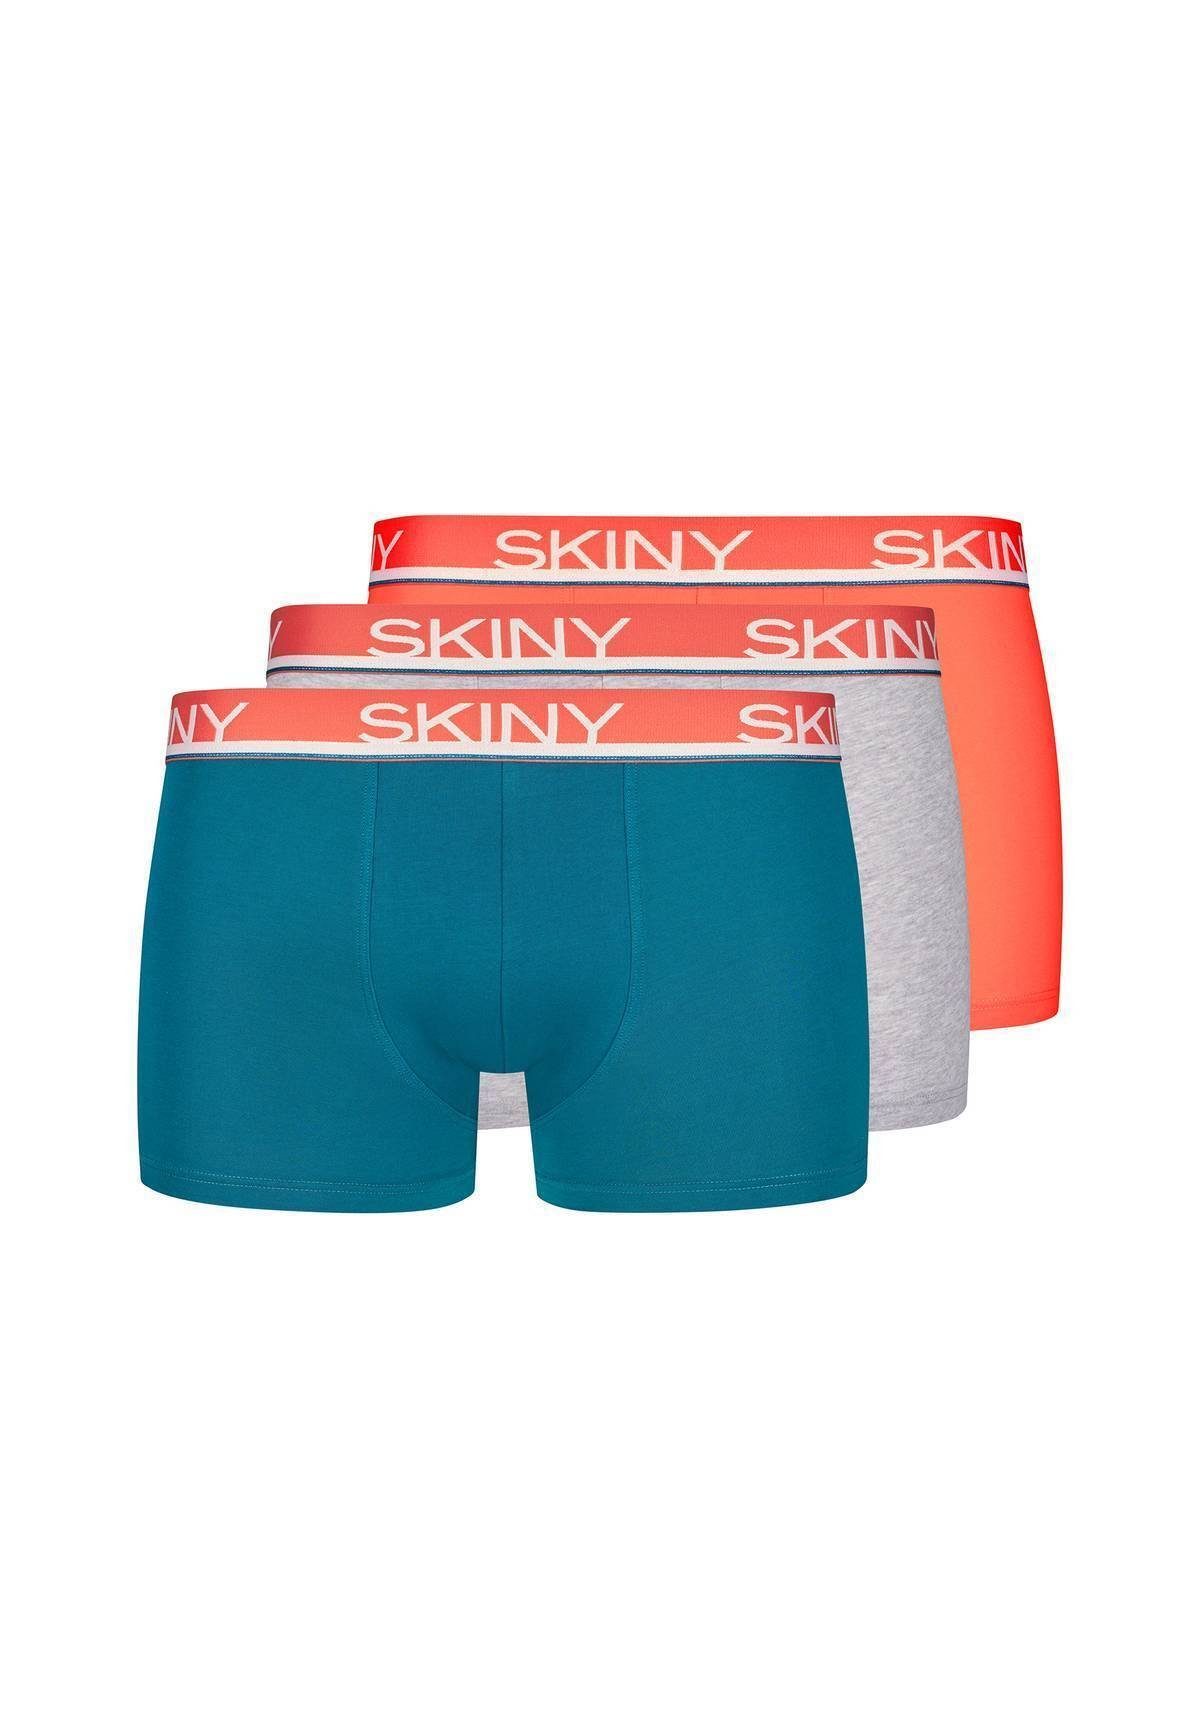 Skiny Boxer Herren Boxer Shorts 3er Pack - Trunks, Pants